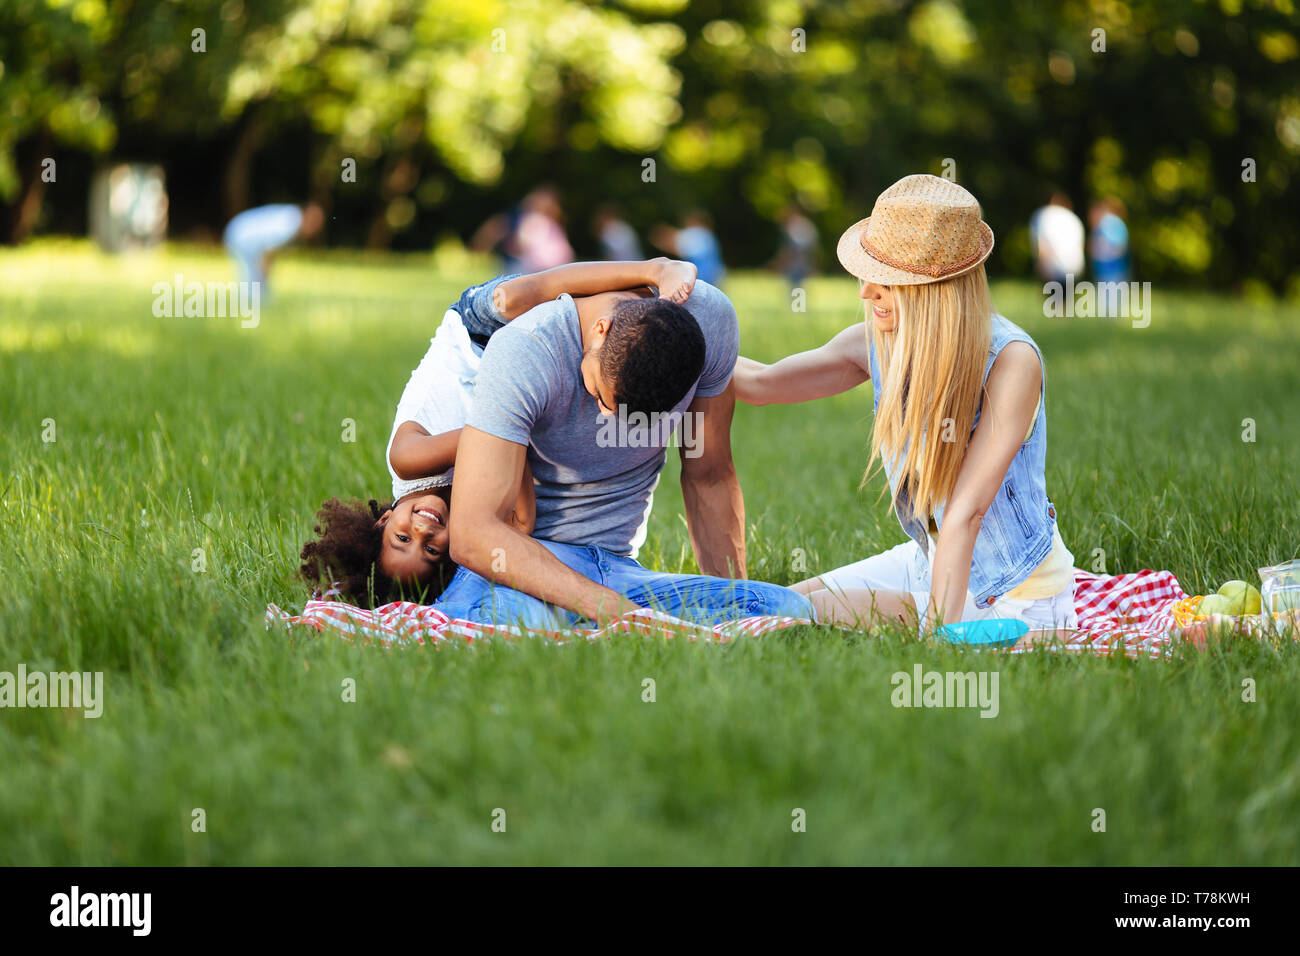 Photo de jolie couple avec leur fille having picnic Banque D'Images